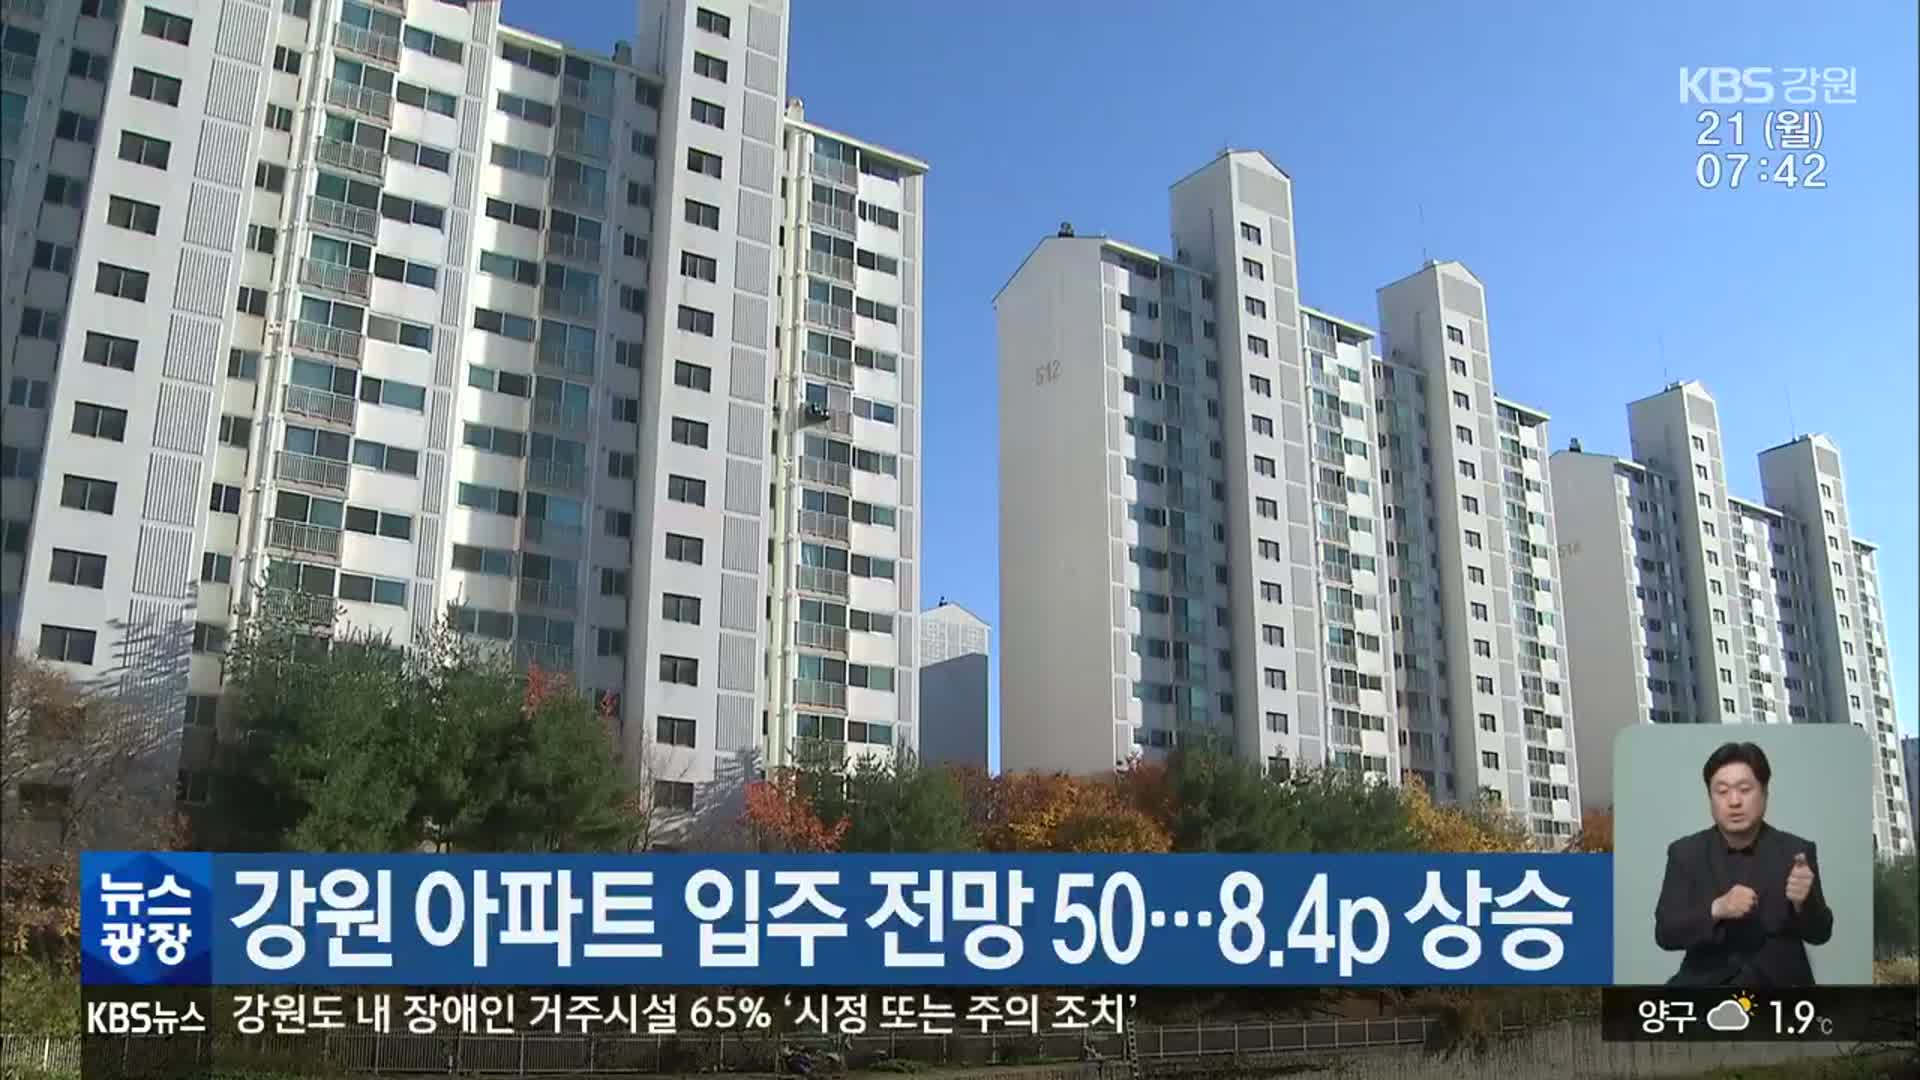 강원 아파트 입주 전망 50…8.4p 상승